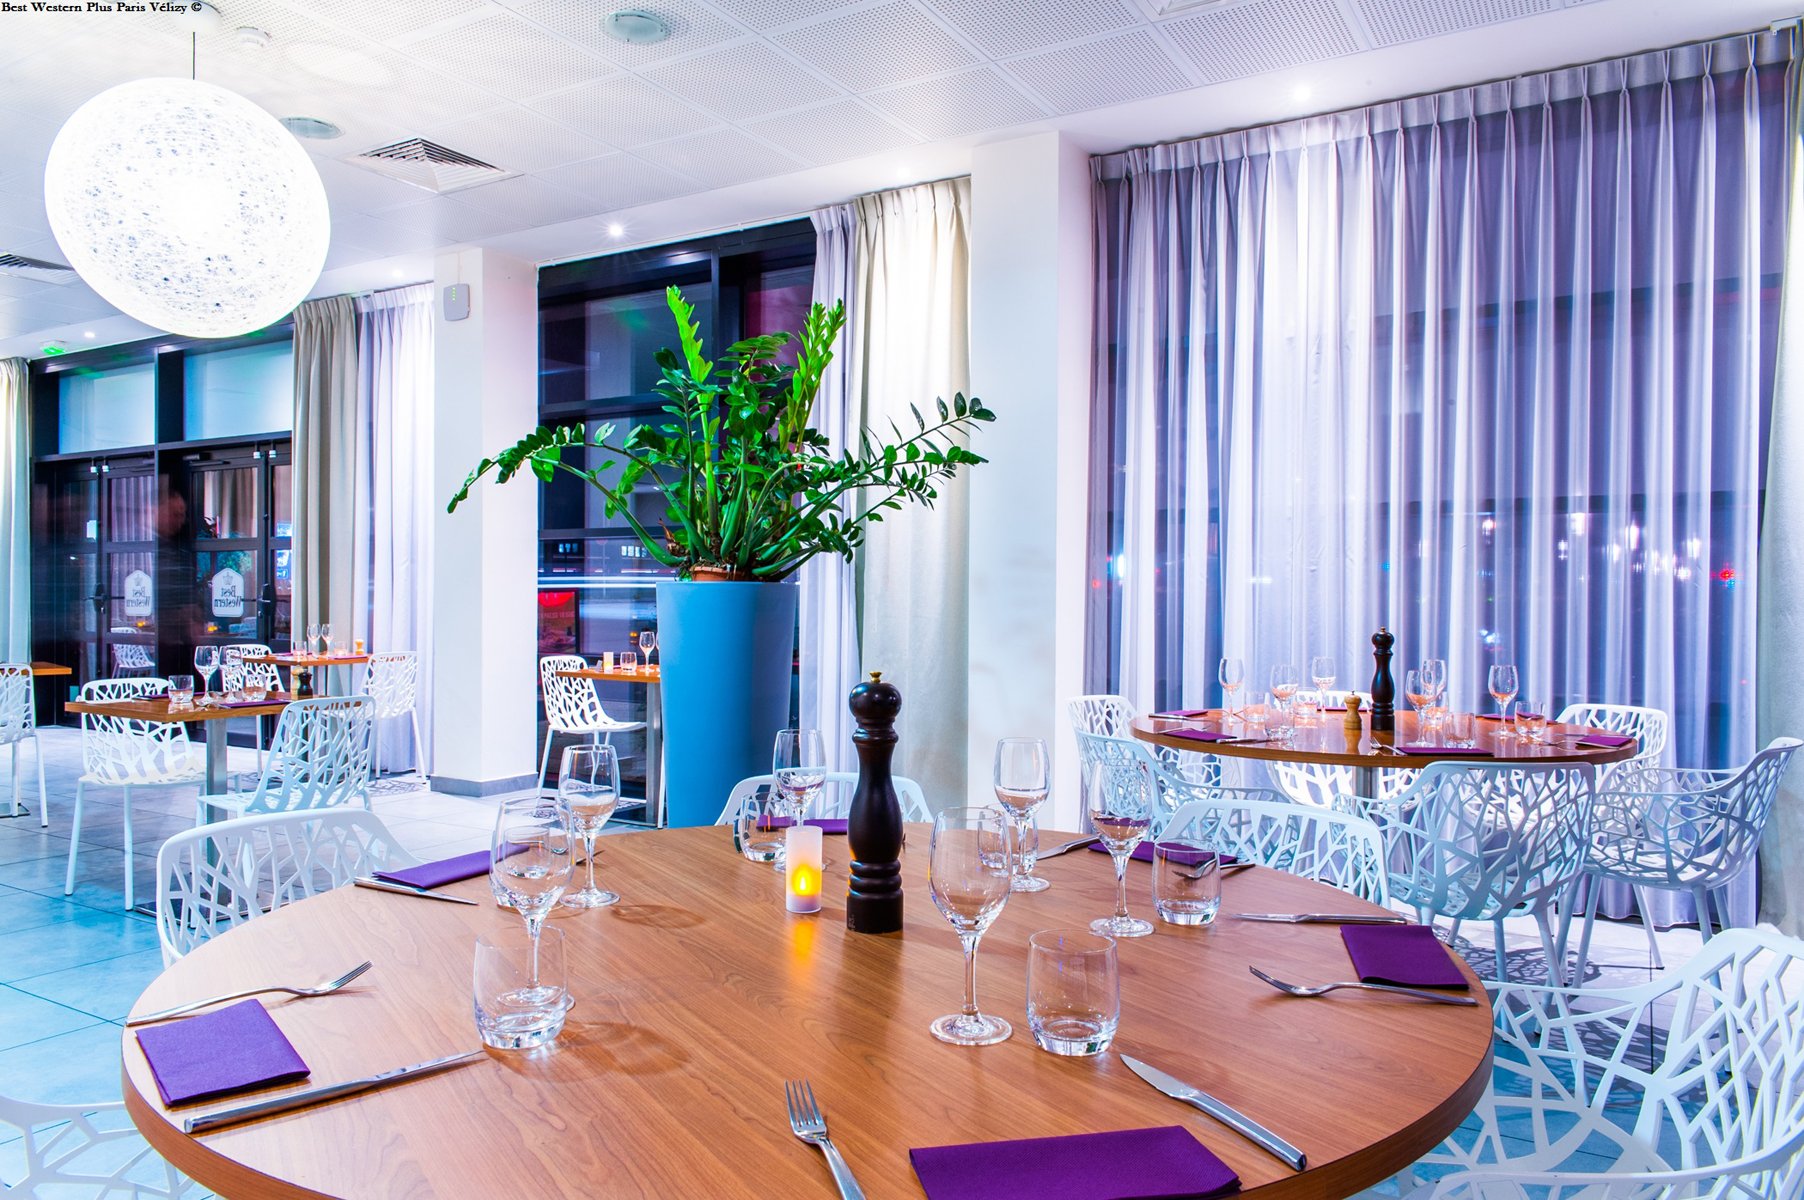 Best Western Plus Paris Vélizy dining room Double V restaurant